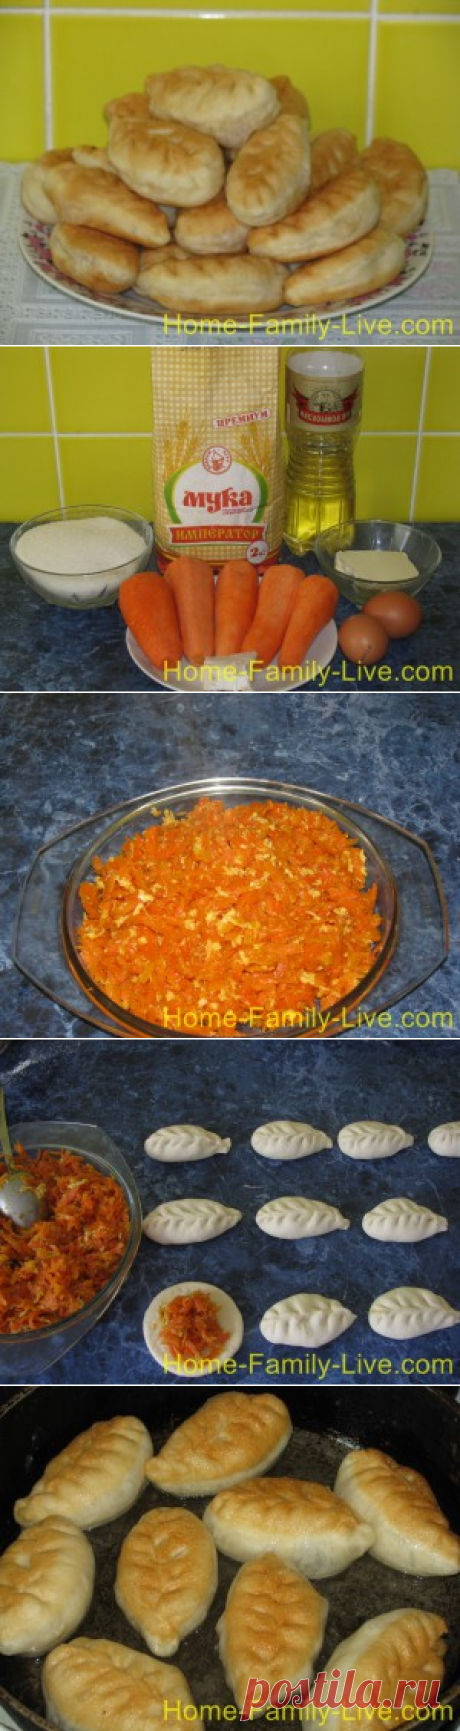 Пирожки с морковкой/Сайт с пошаговыми рецептами с фото для тех кто любит готовить